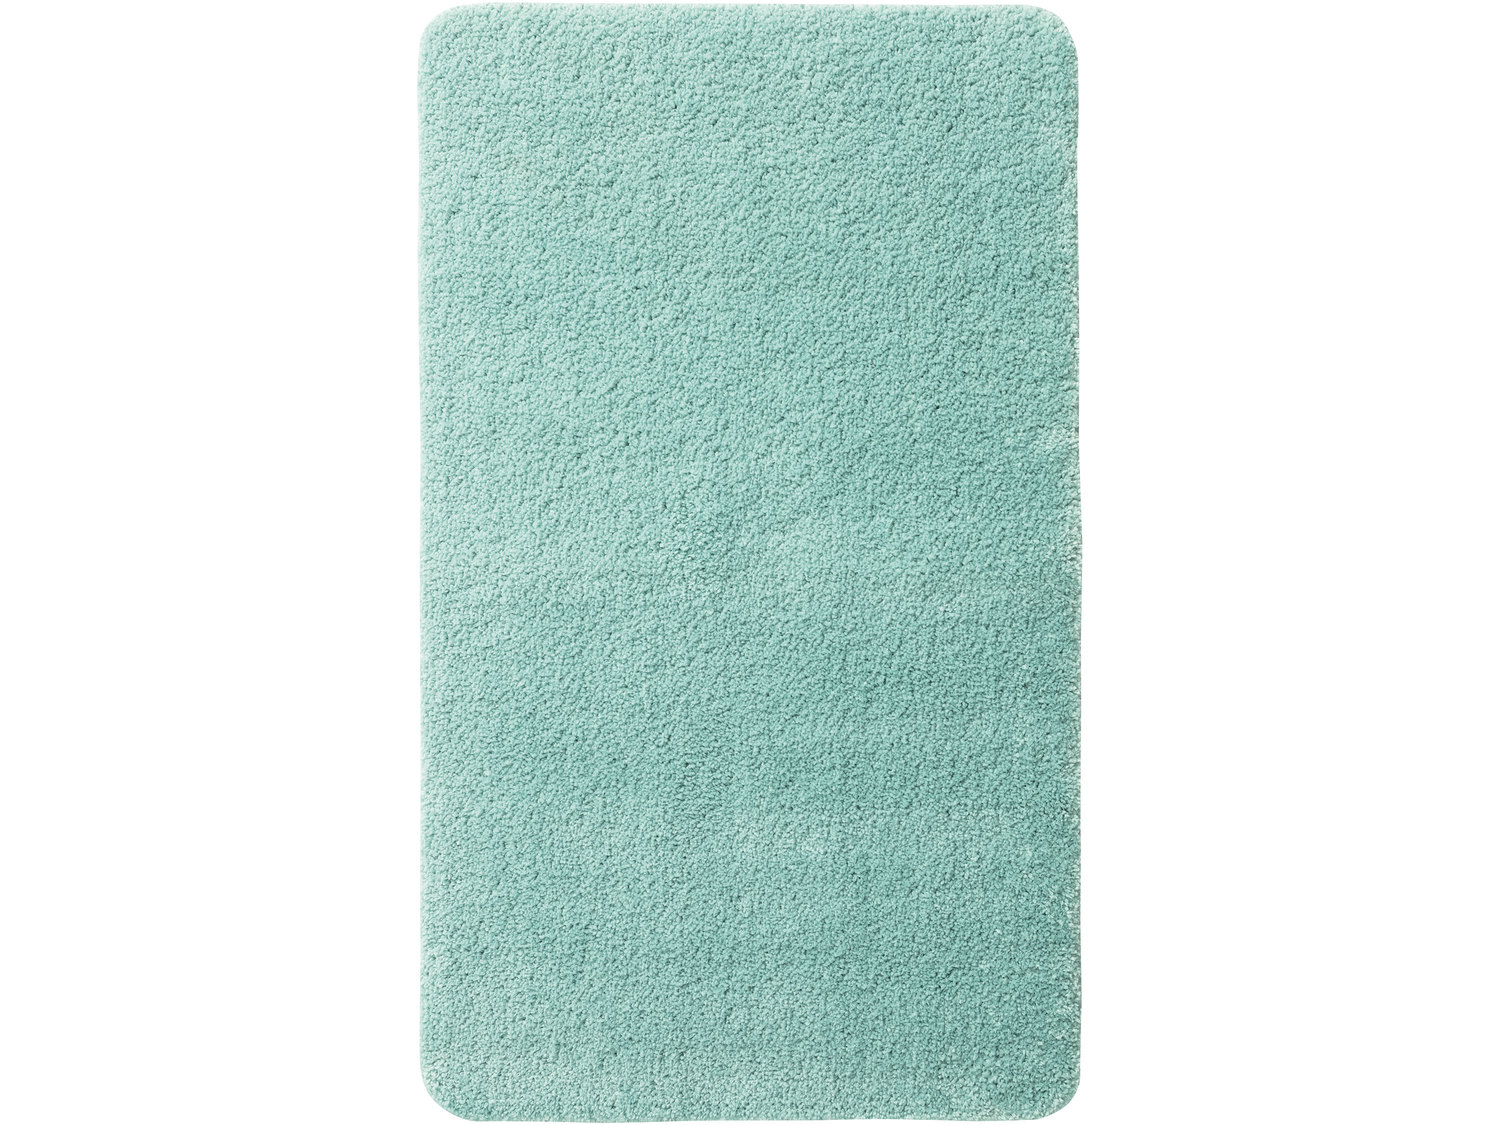 Zestaw dywaników łazienkowych Miomare, cena 39,99 PLN 
- możliwość prania ...